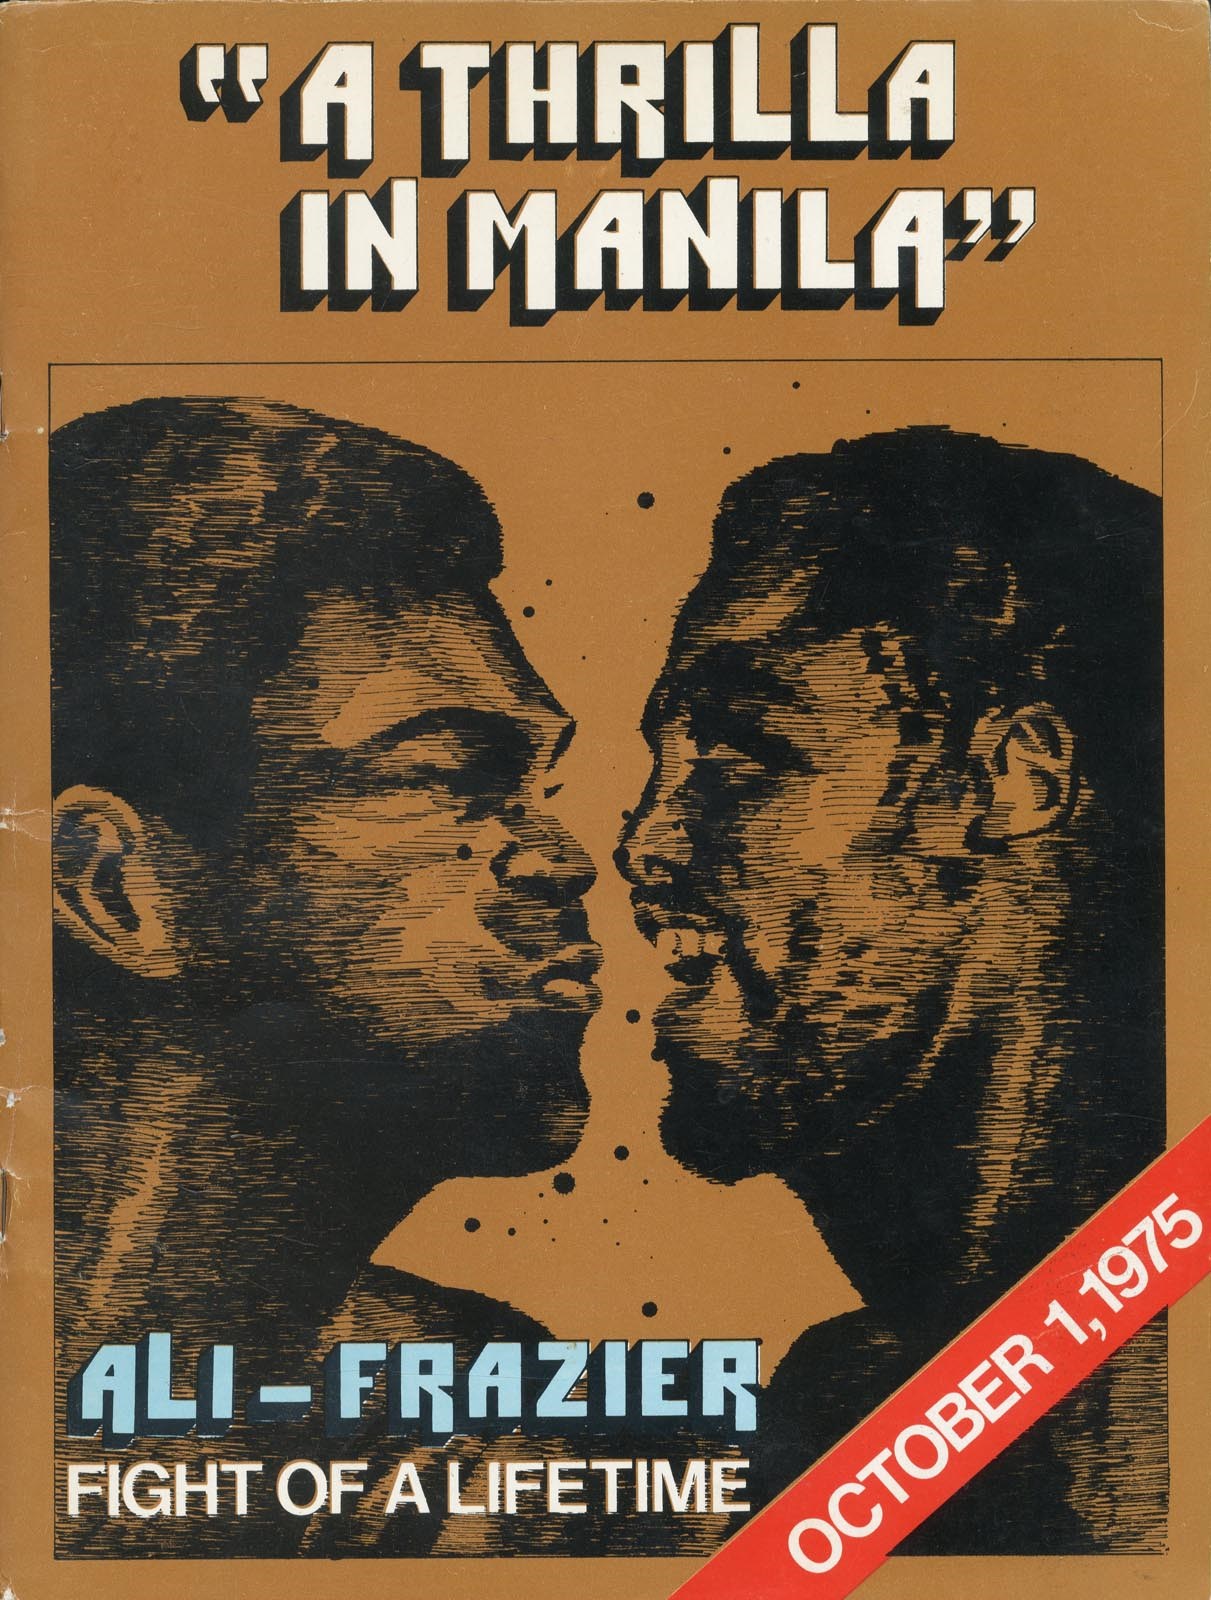 - 1975 Ali vs. Frazier III "Thrilla in Manila" On-Site Program